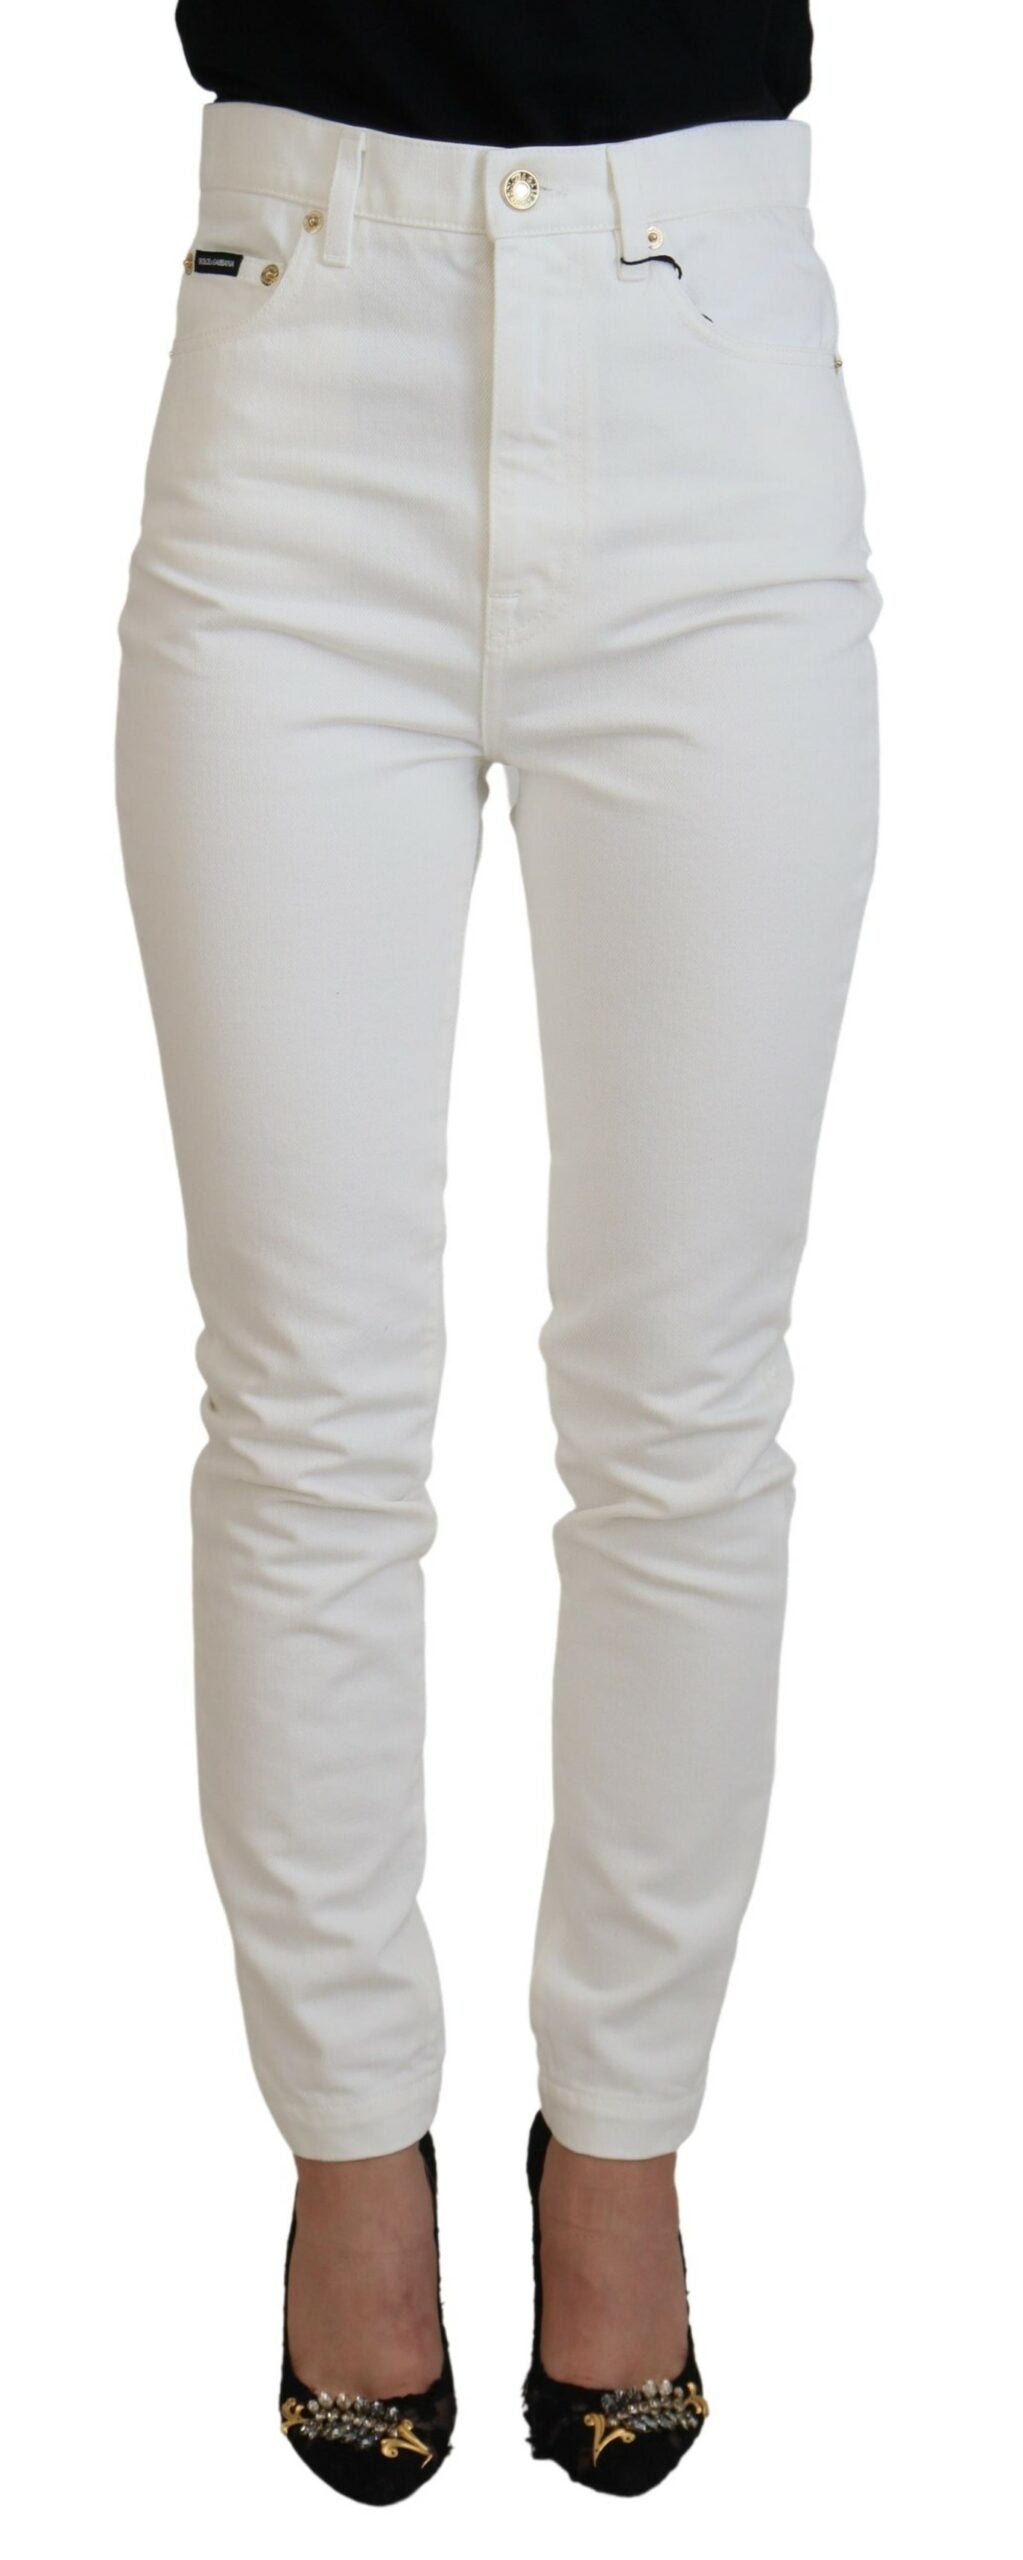 Dolce & Gabbana Svelte High Waist Slim Jeans in Off White